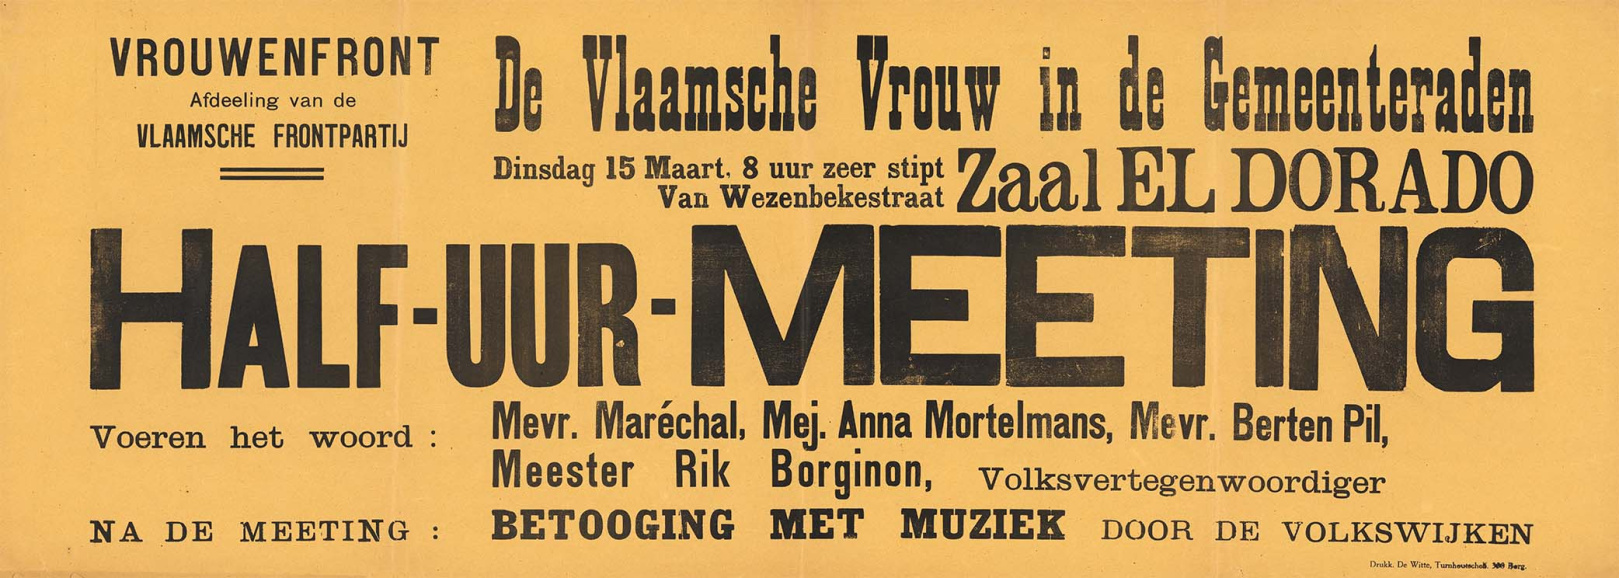 Affiche van het Vrouwenfront naar aanleiding van de gemeenteraadsverkiezingen van 1921. (Collectie Stad Antwerpen, Letterenhuis, tglhps46931)